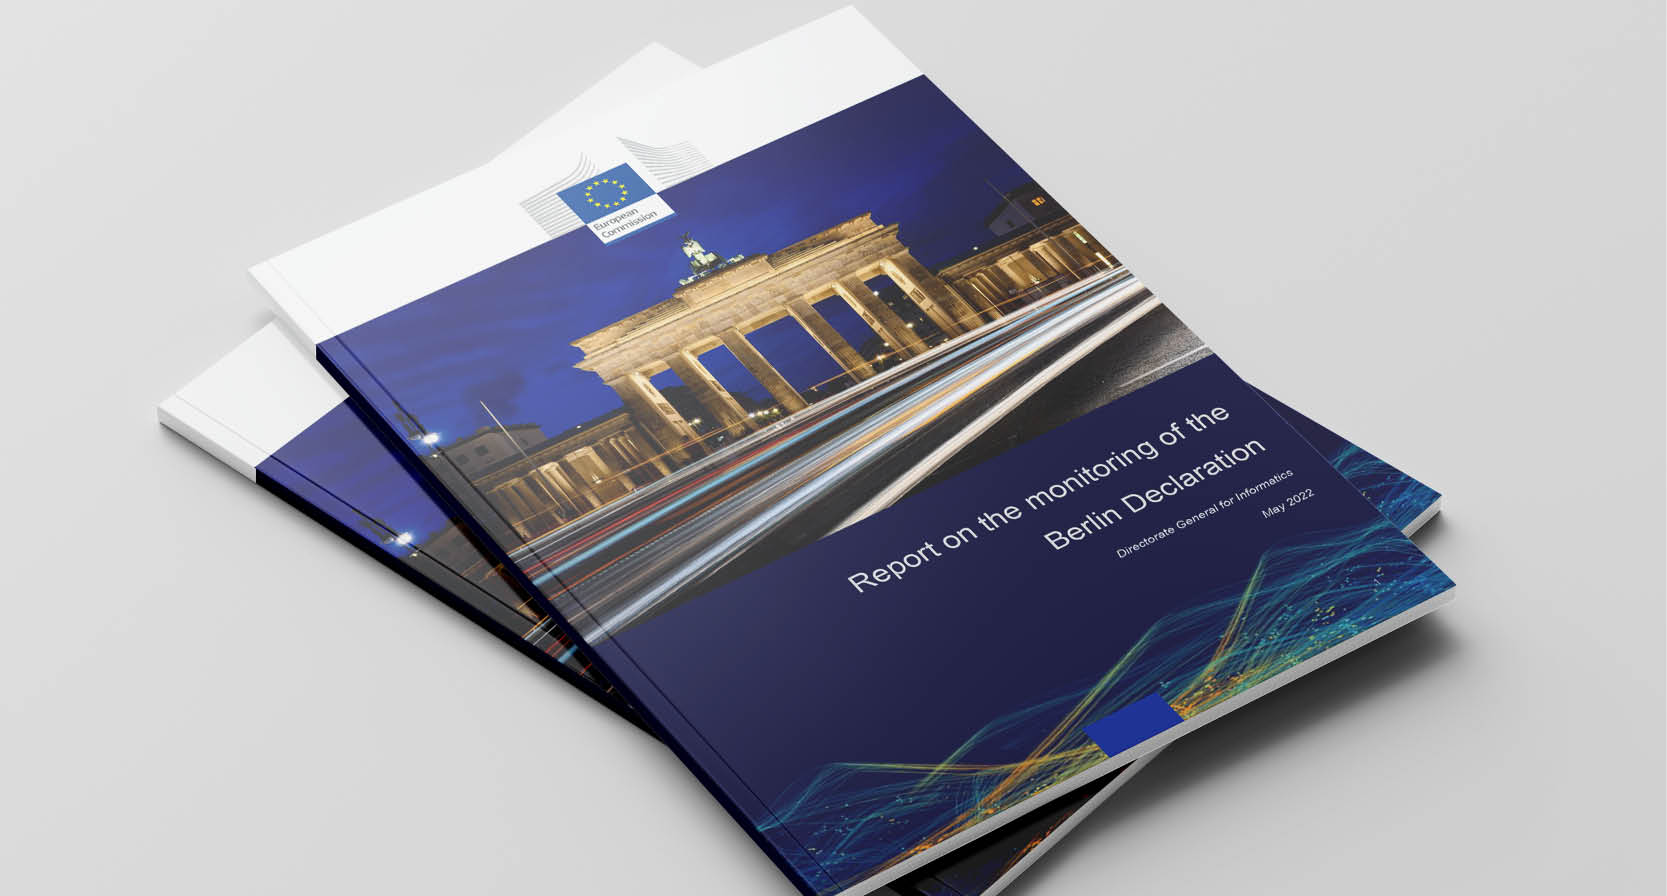 Publication du premier rapport de suivi de la Déclaration de Berlin sur la société numérique et une administration numérique basée sur des valeurs